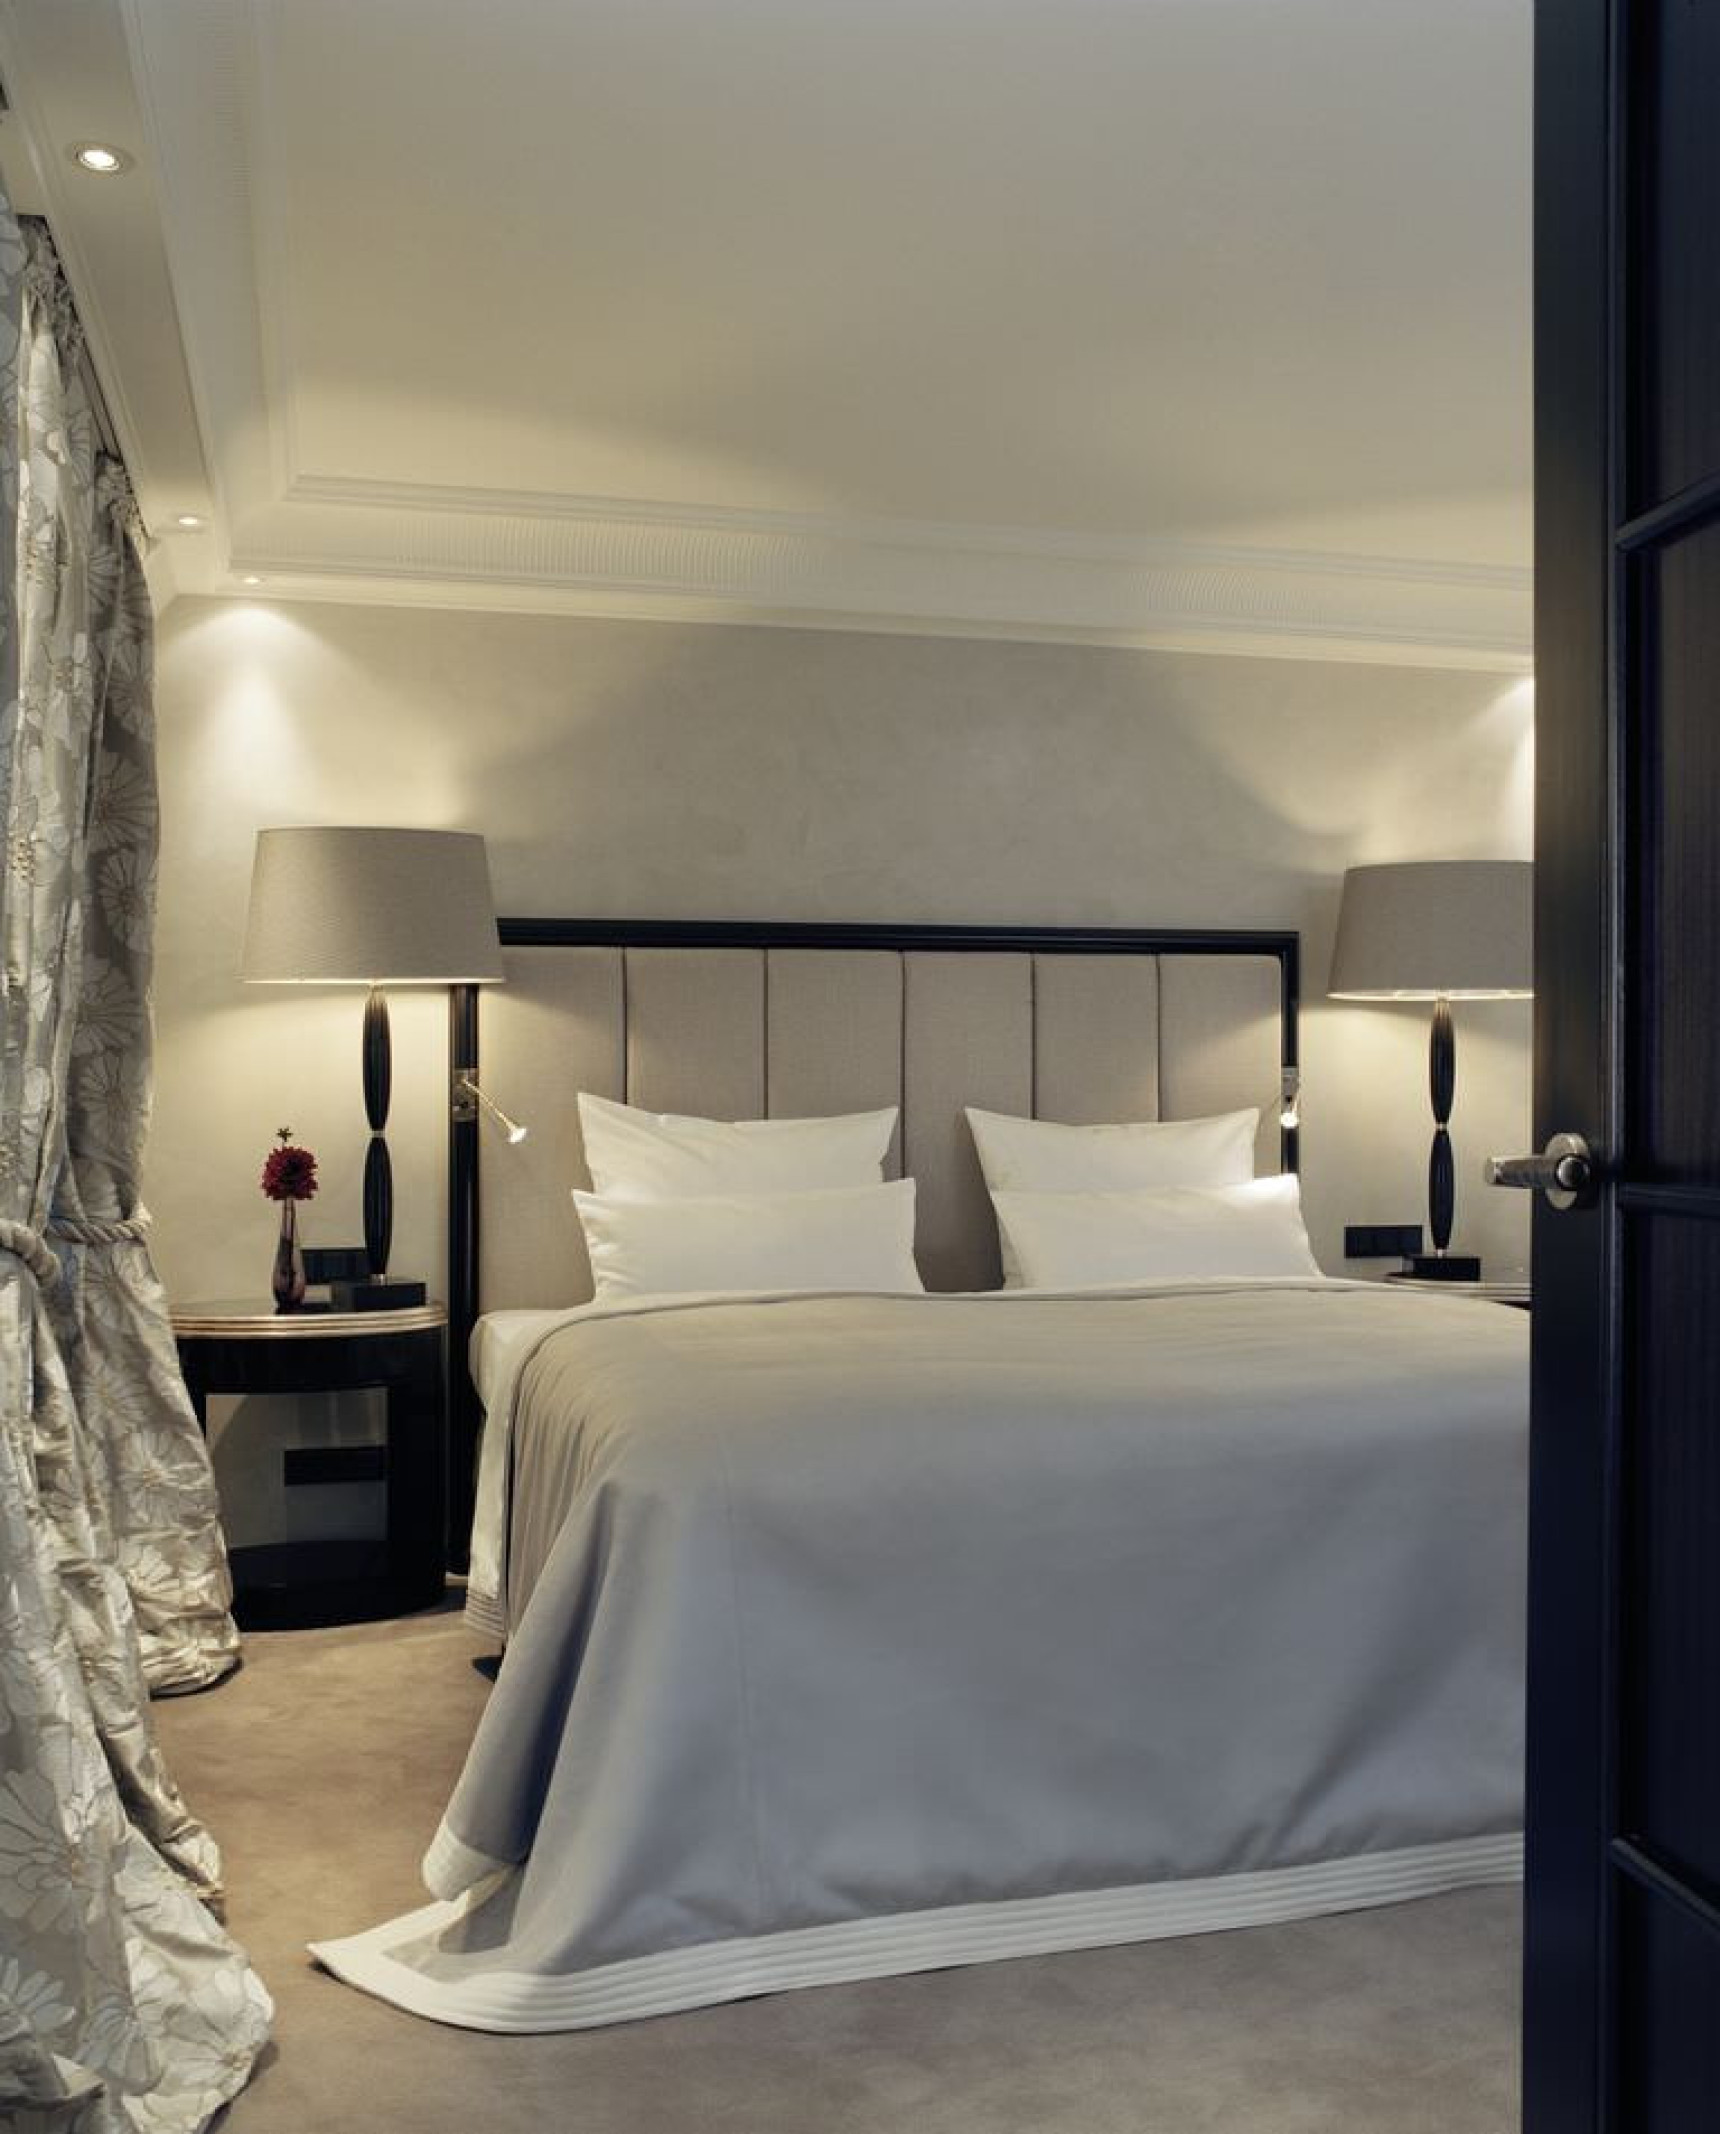 bayerischer-hof:-a-most-luxurious-hotel-in-munich-bedroom-2